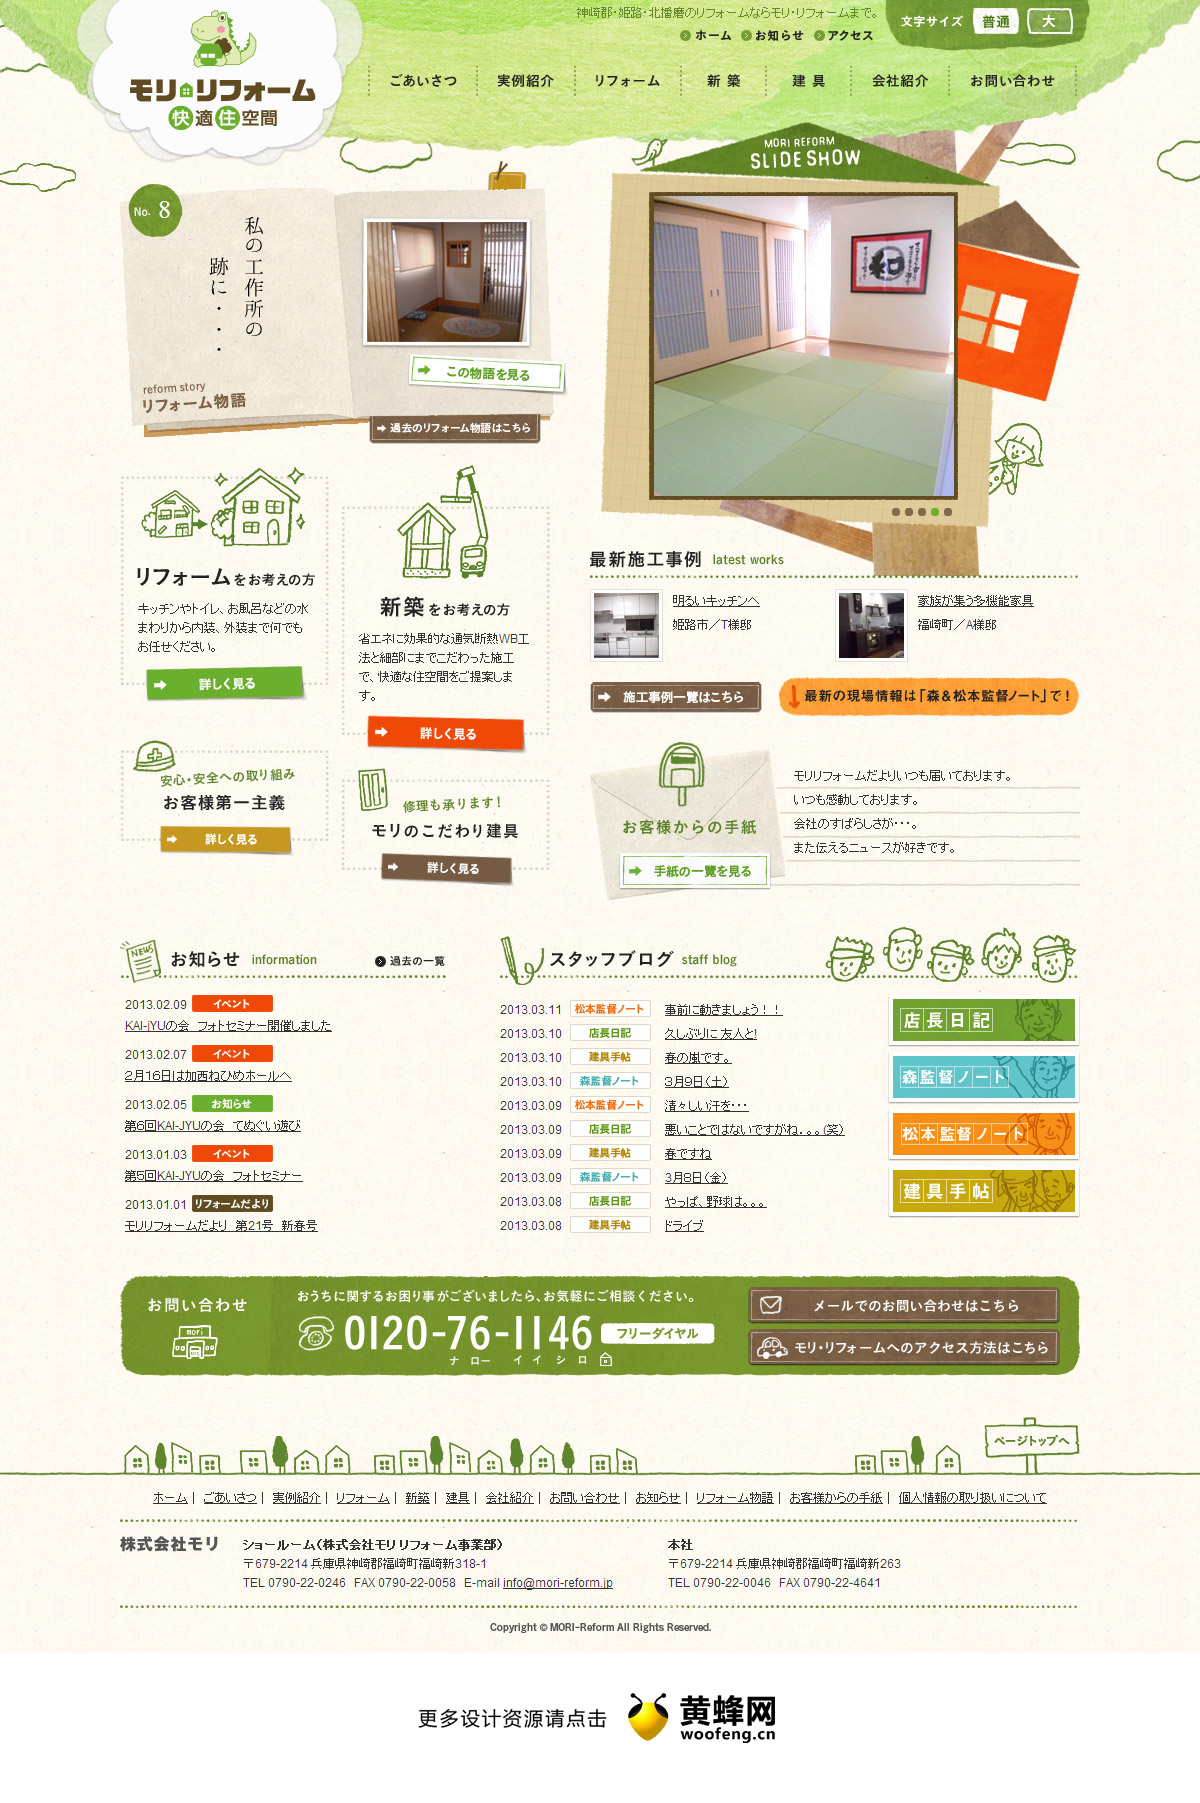 日本住宅重建公司网站，来源自黄蜂网https://woofeng.cn/web/